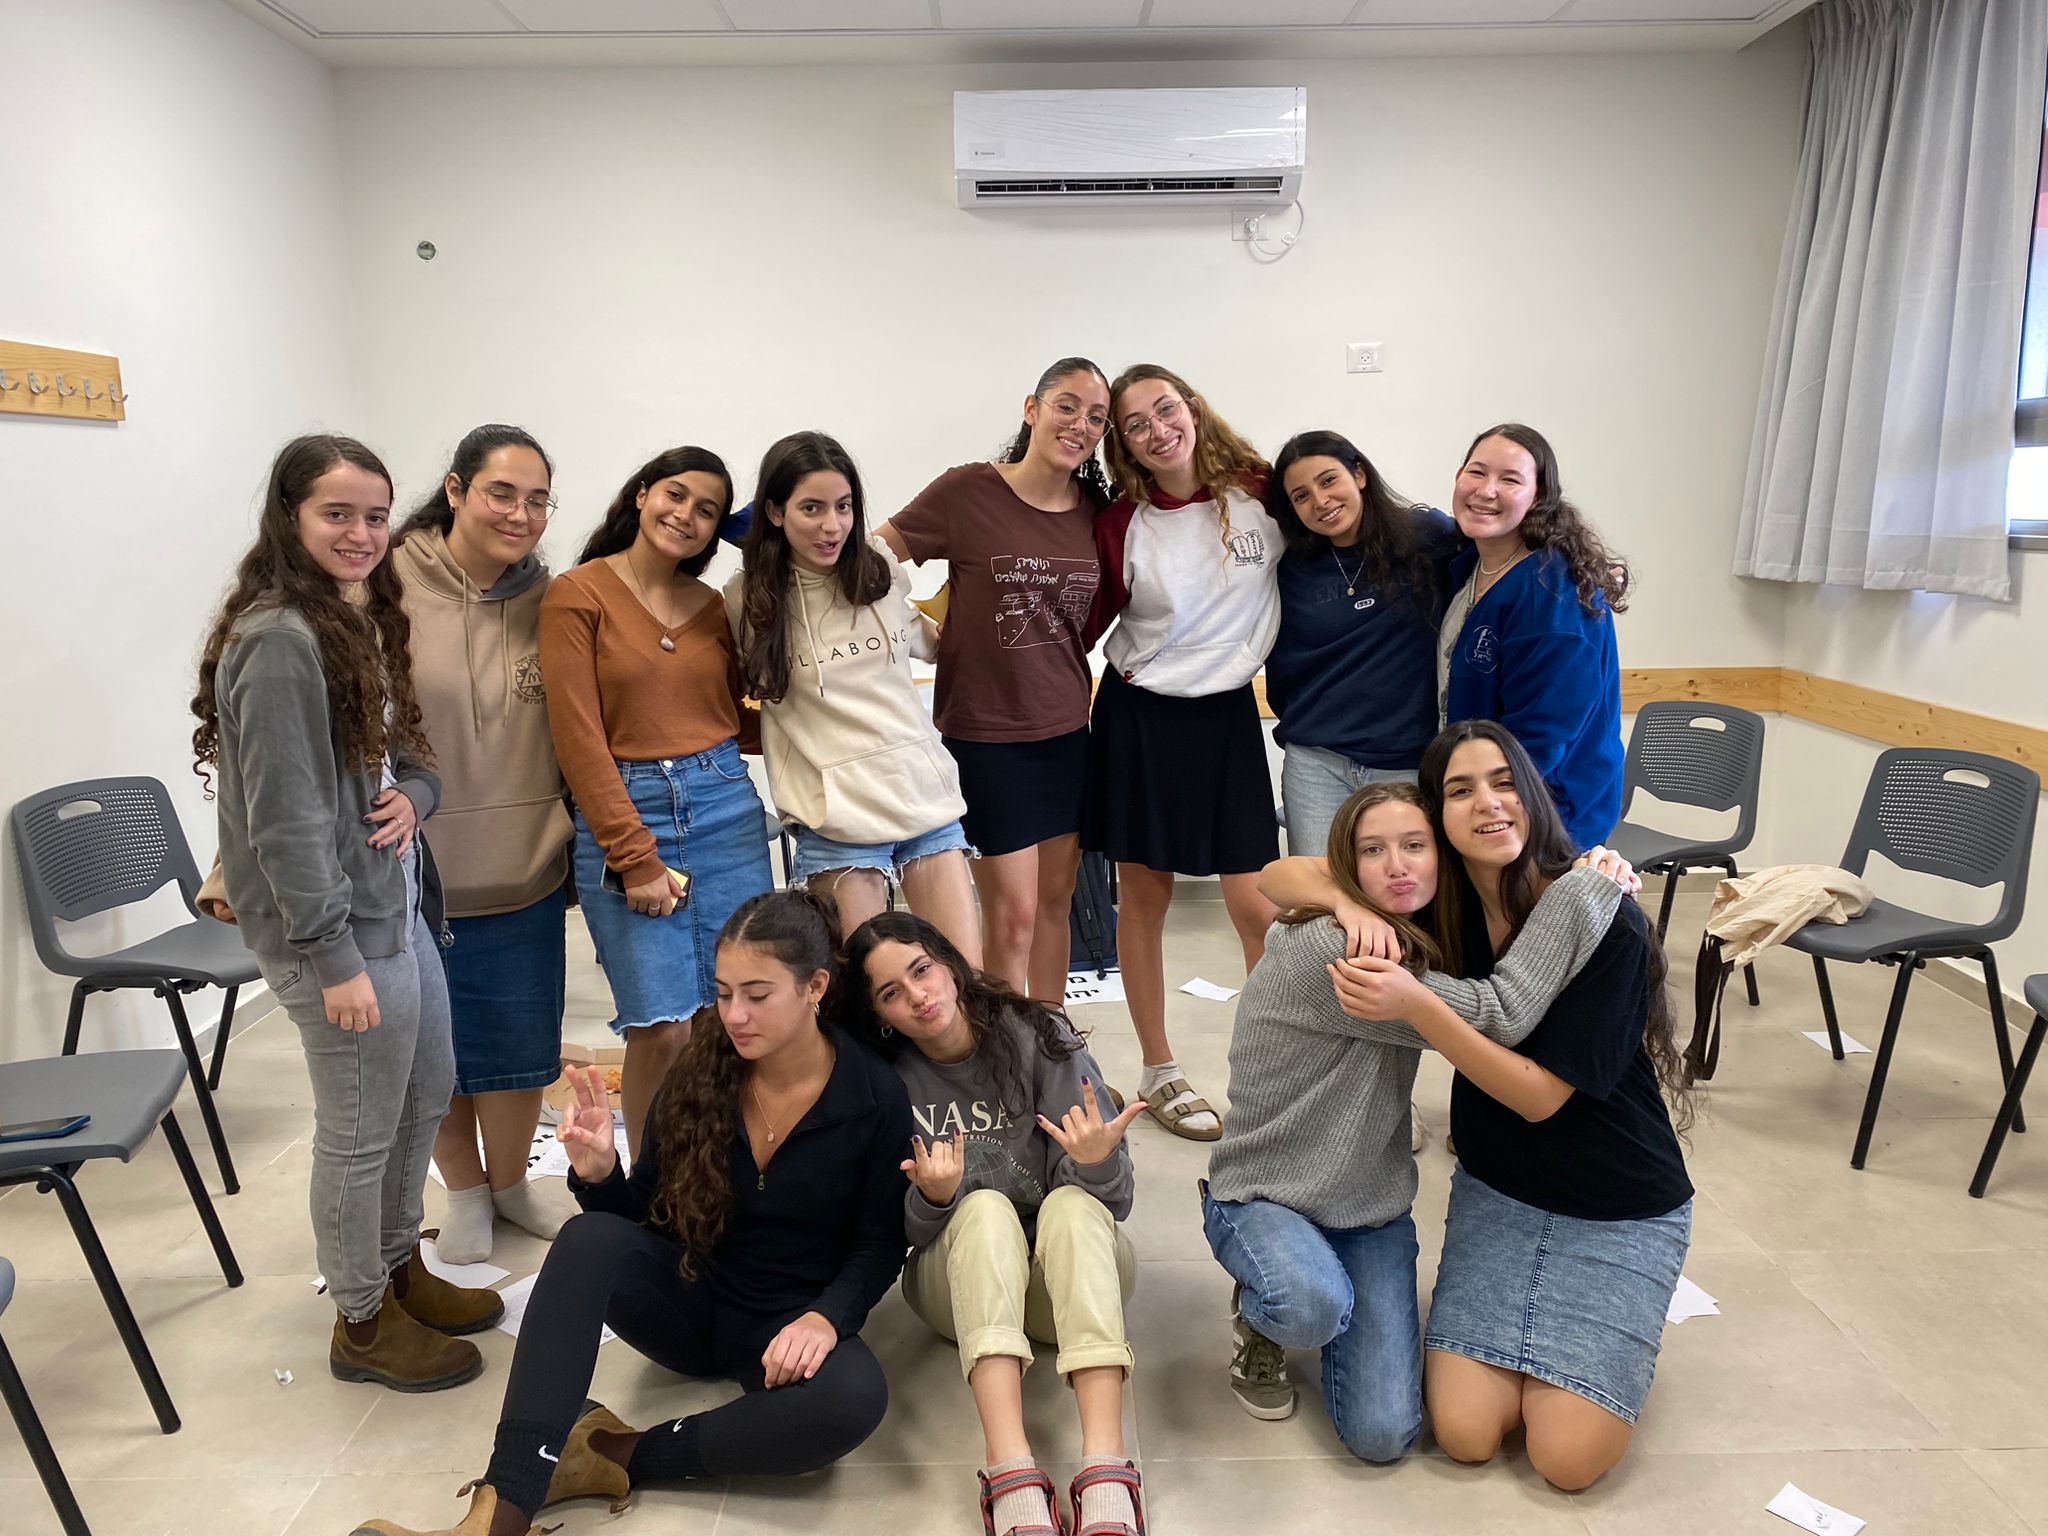 תרבות יהודית ישראלית - להיות אזרח במדינת ישראל -פעילות לתלמידי בתי ספר